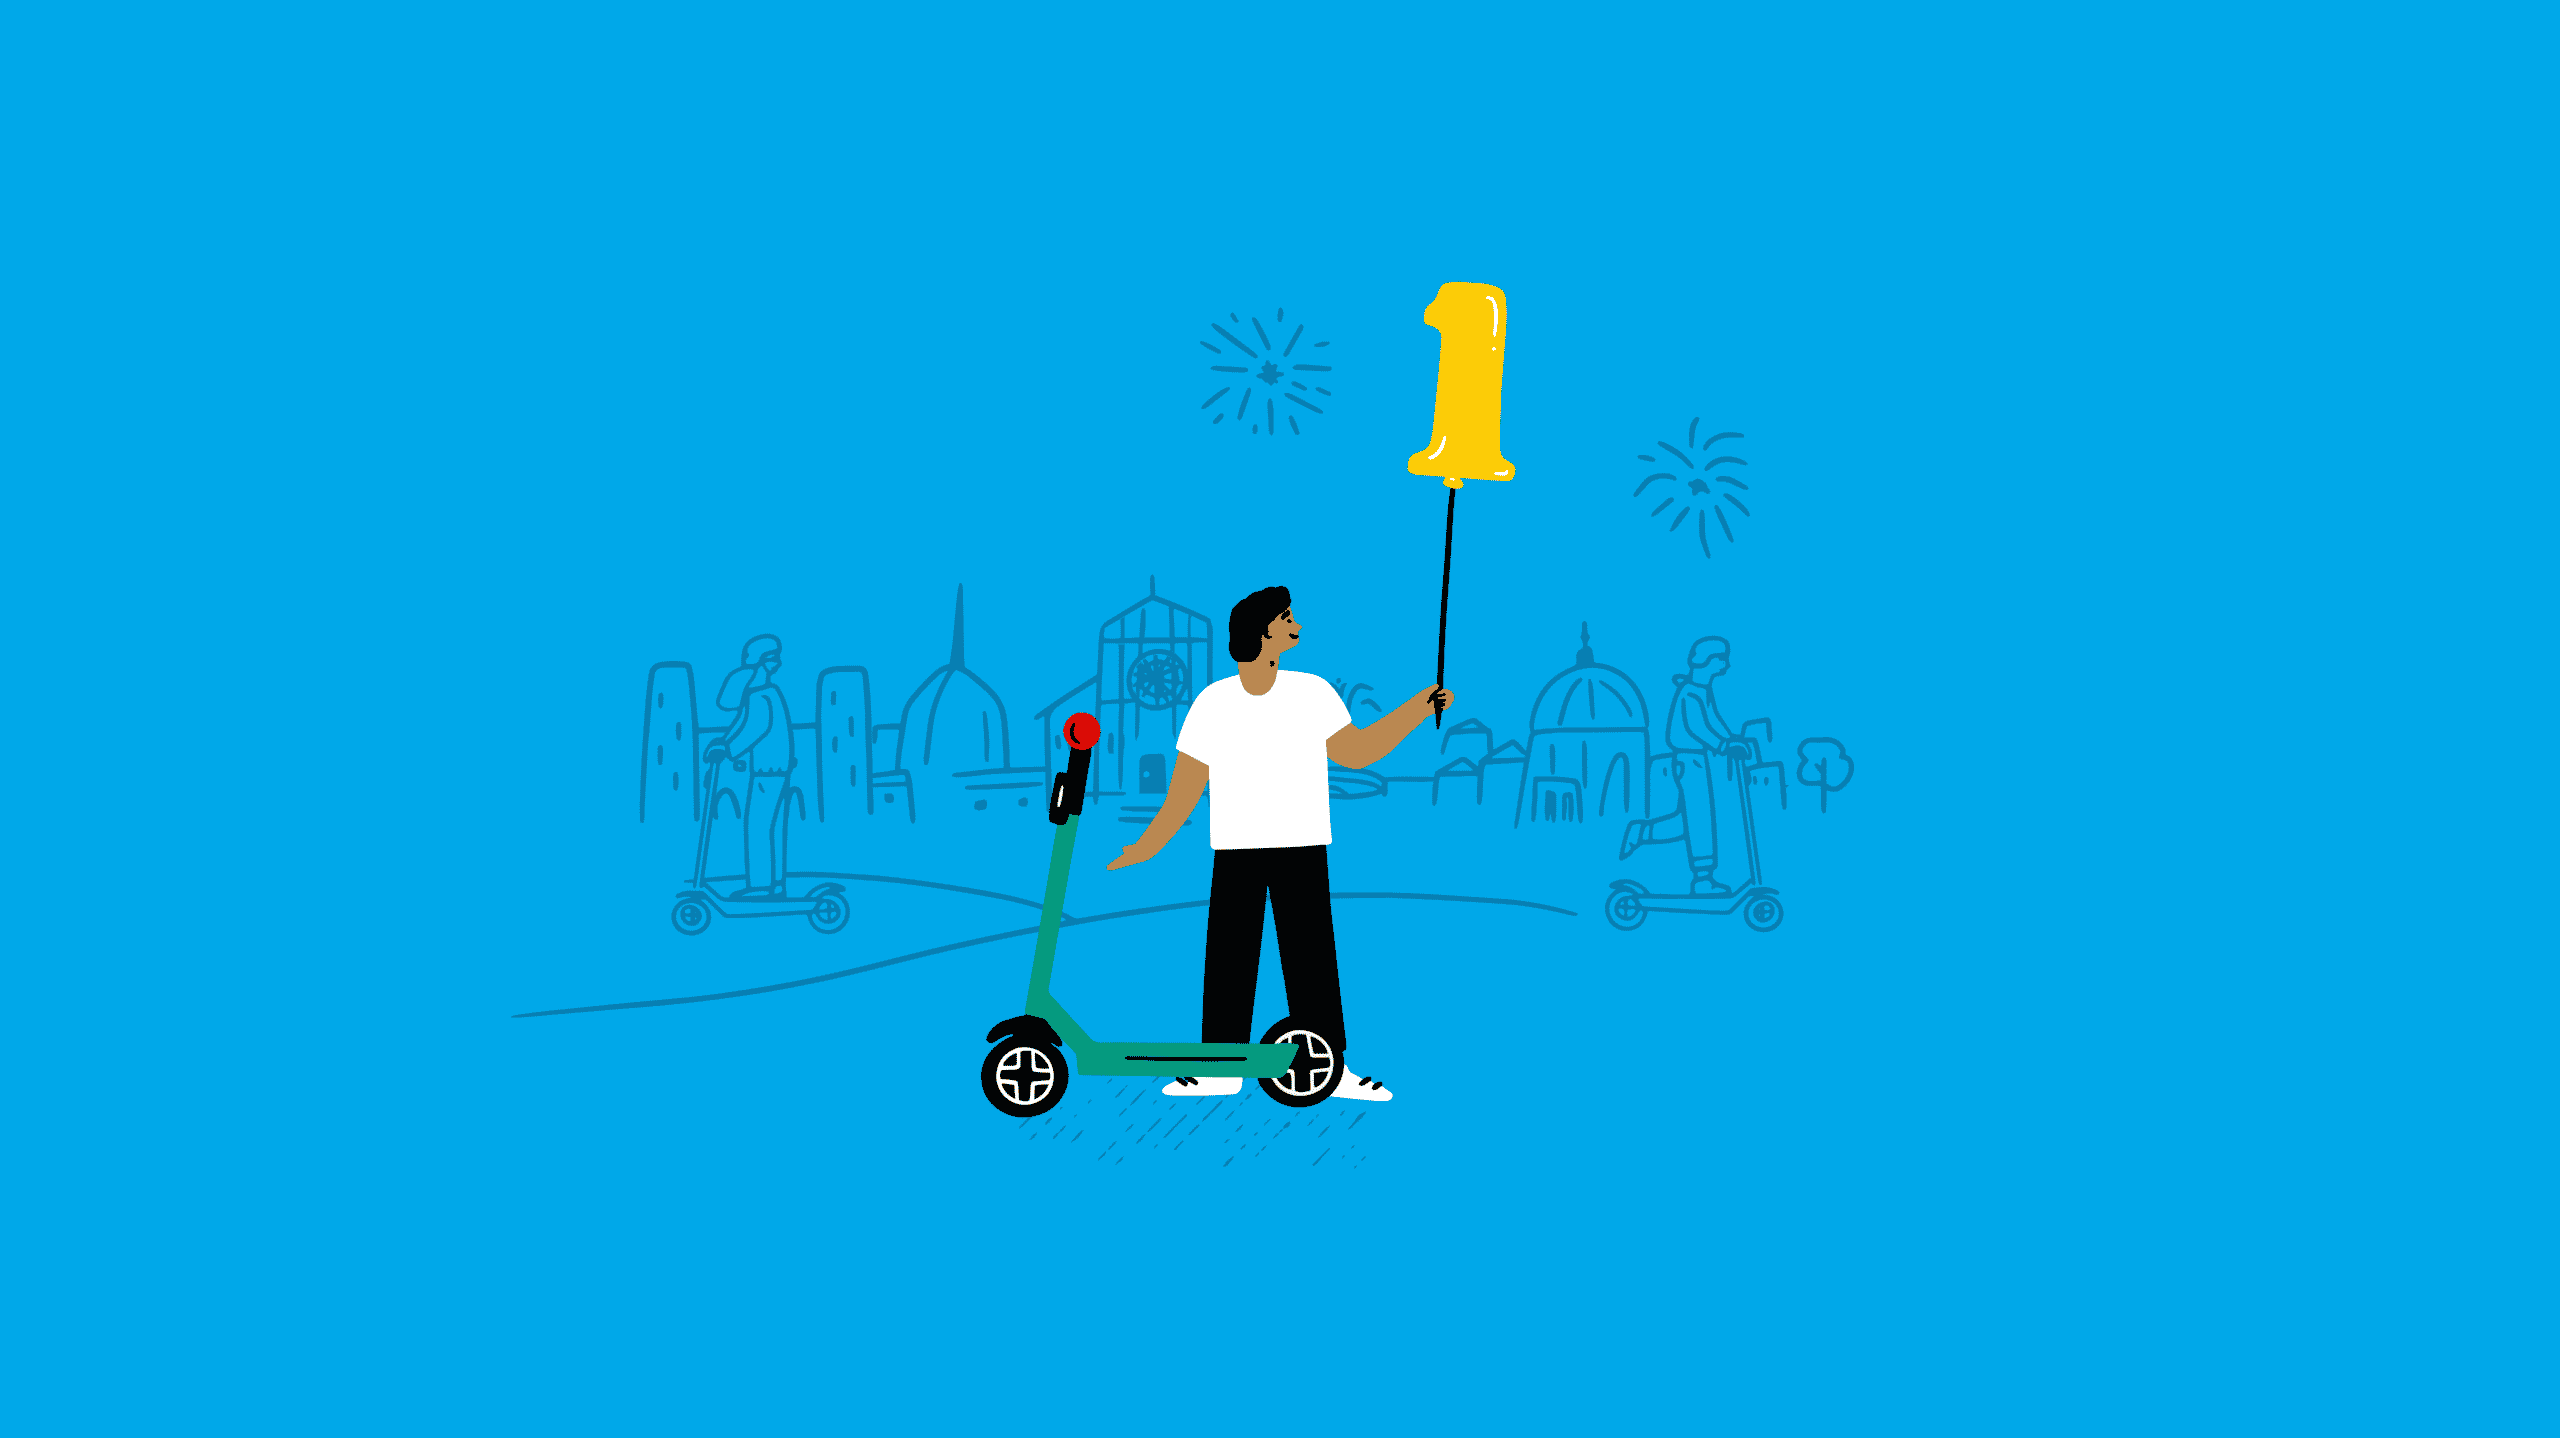 Un'illustrazione di un uomo accanto a uno scooter che tiene un palloncino a forma di "numero uno", sorride. I fuochi d'artificio sono visibili sullo sfondo blu.